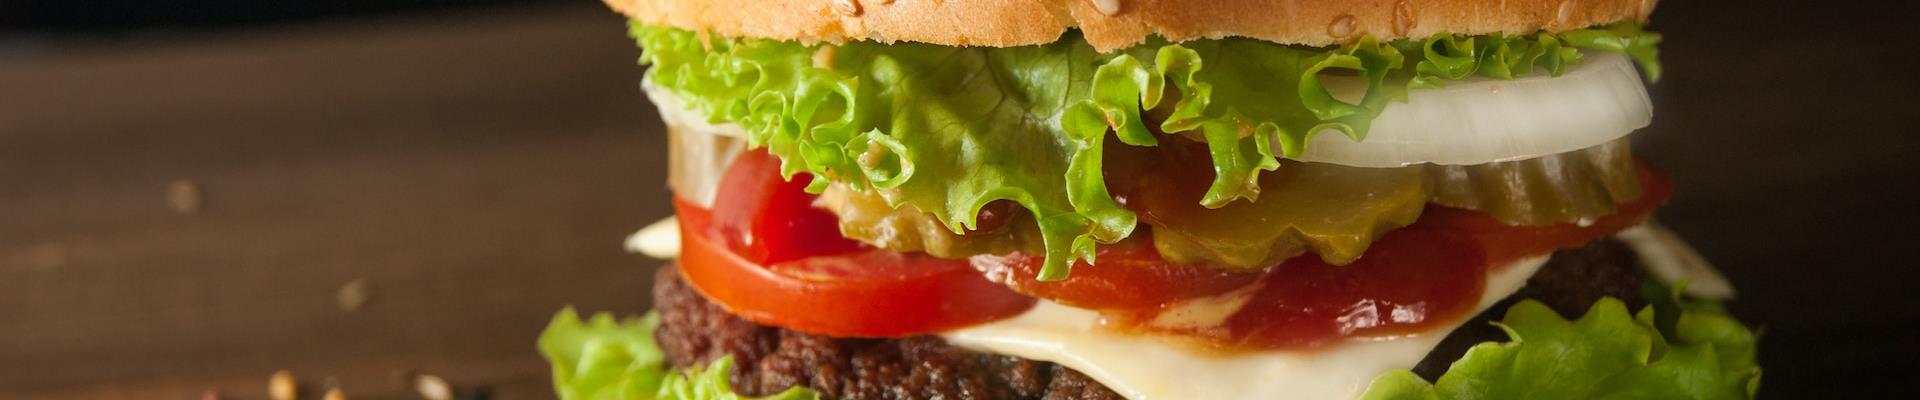 Burger King dá descontos especiais para consumidores de ressaca